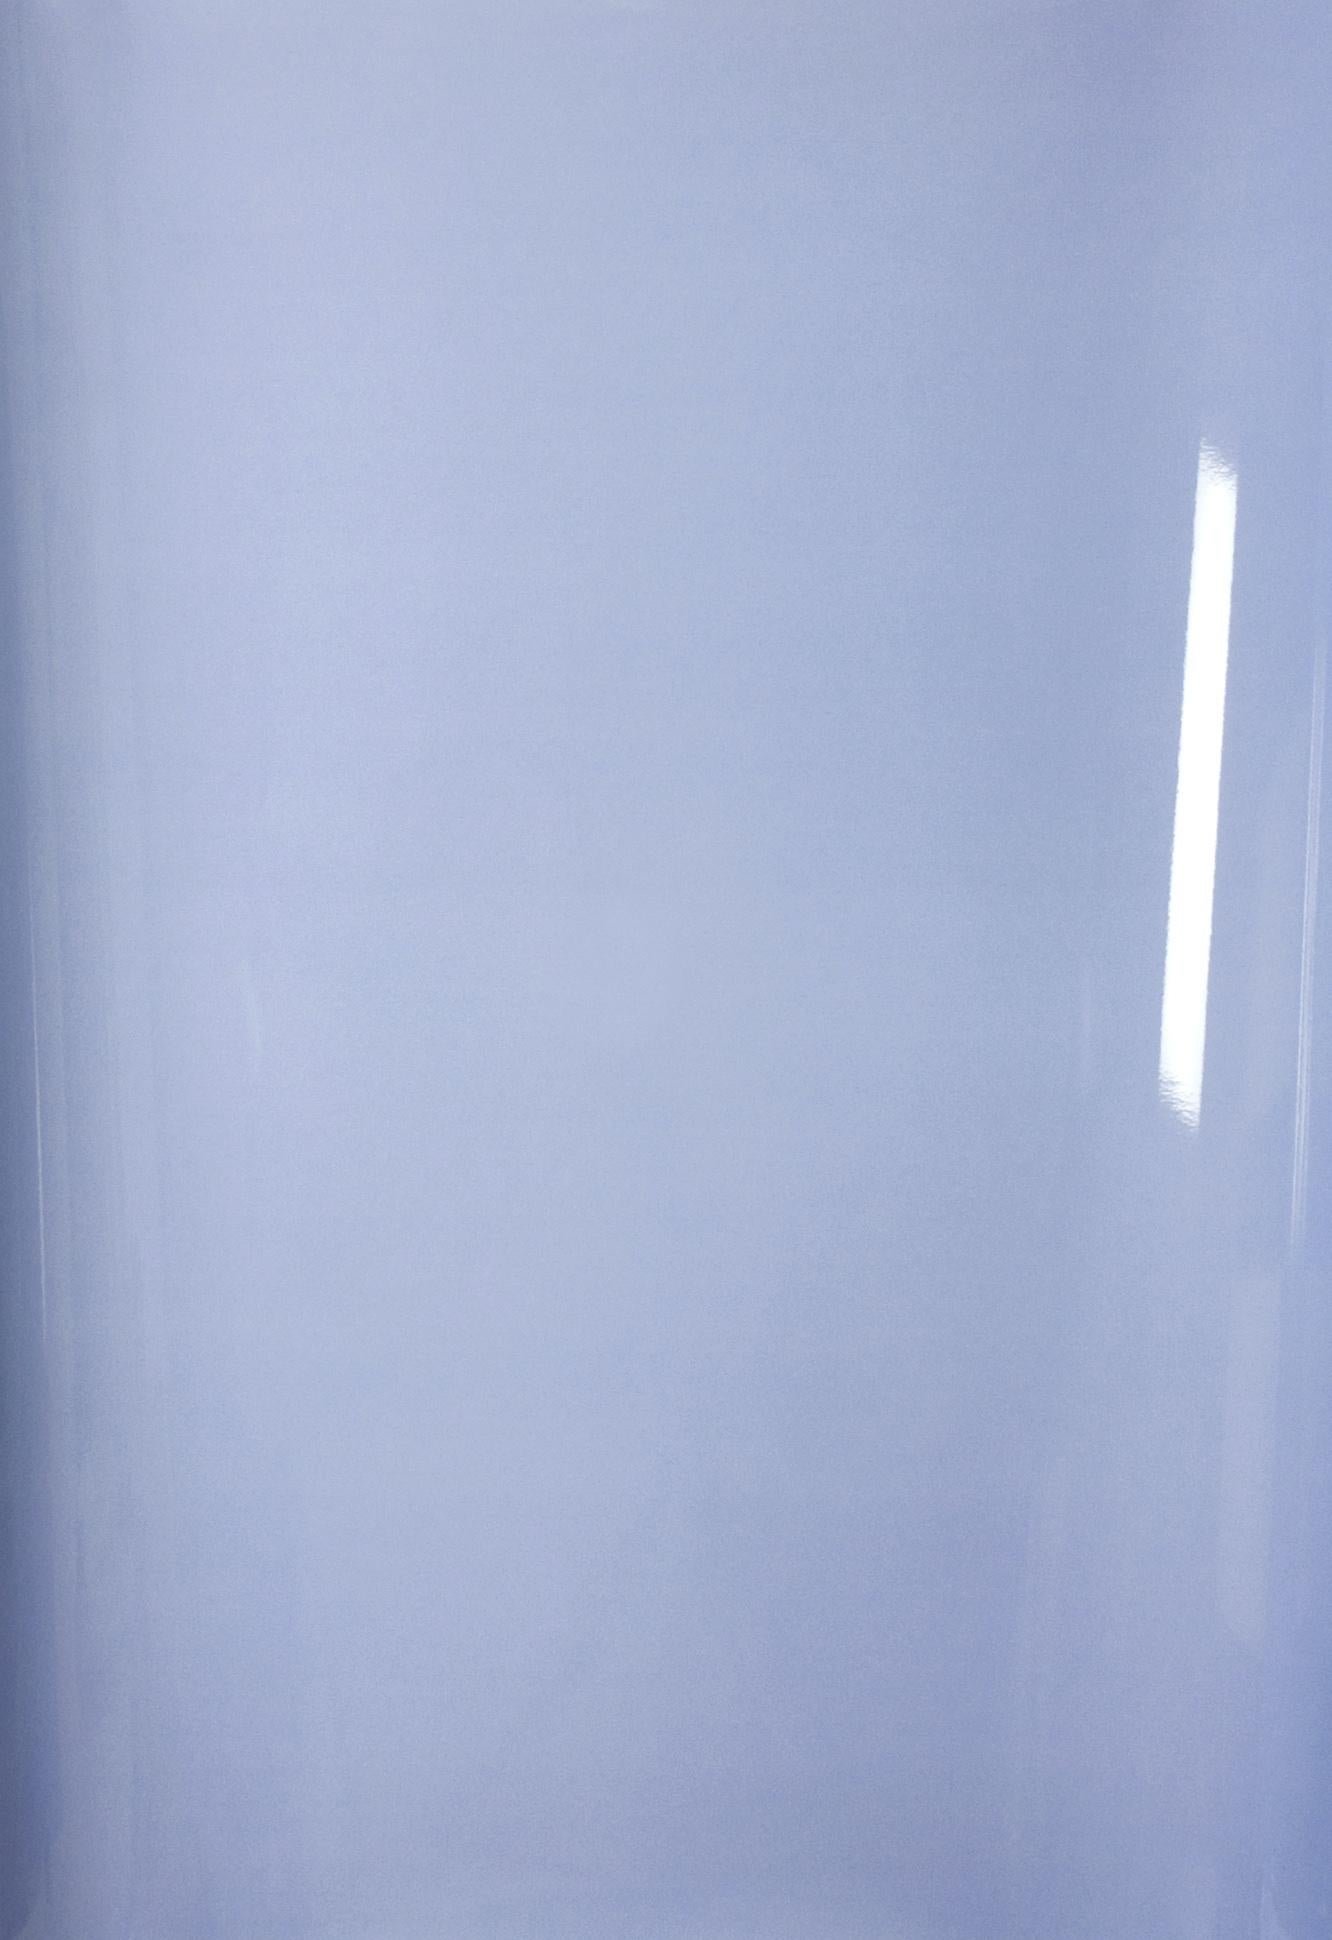 Schatten auf Papier, Nr. 2 – Zeitgenössische abstrakte blaue monochrome Fotografie